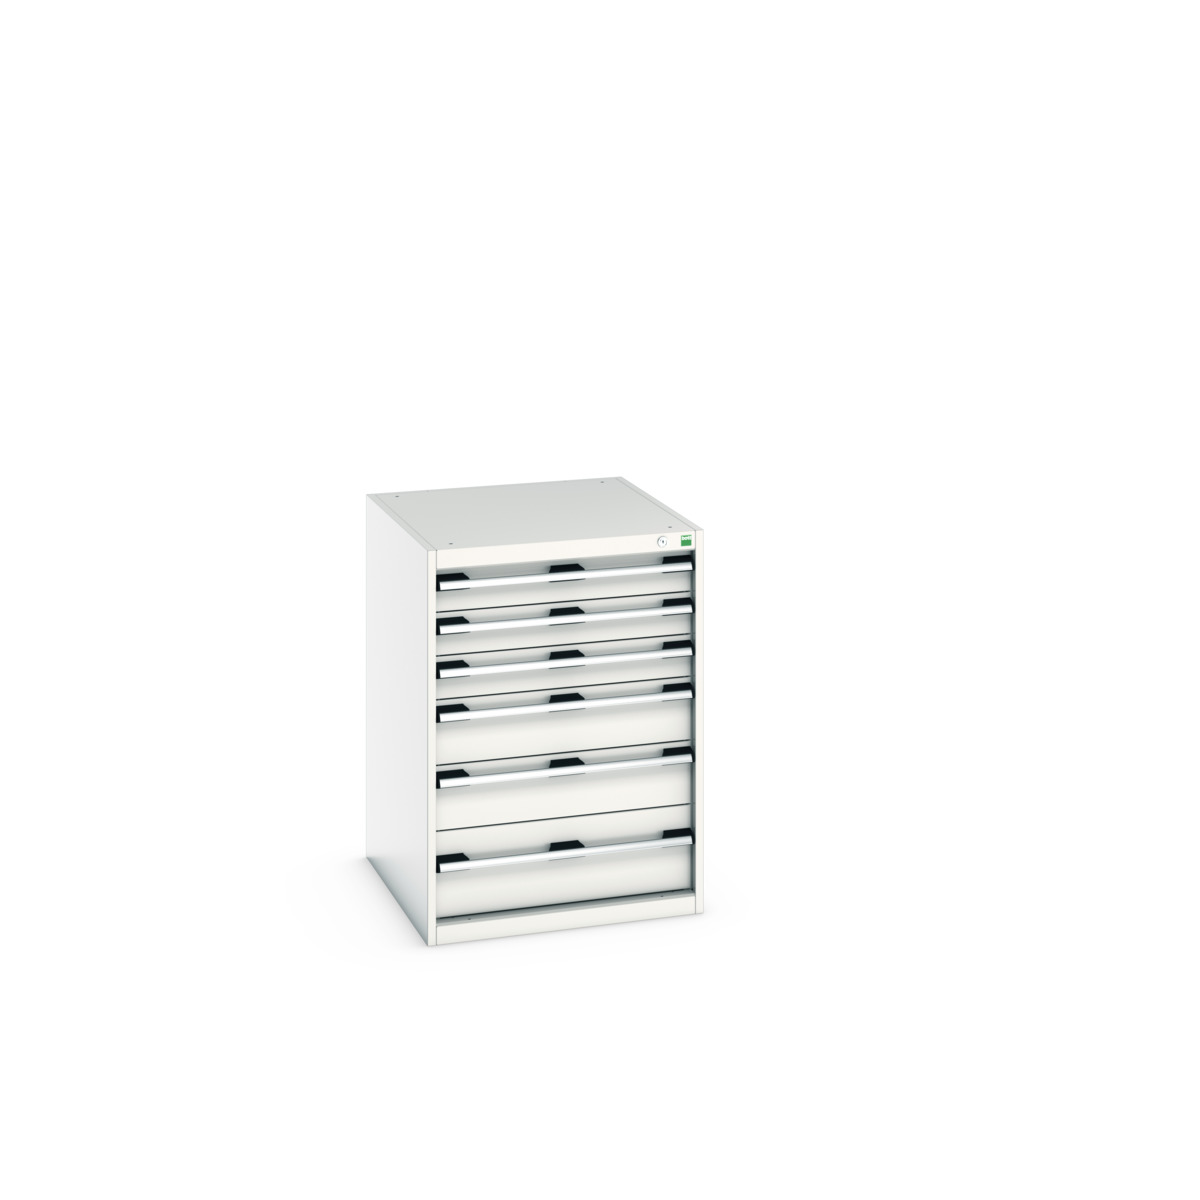 40027088.16V - cubio drawer cabinet